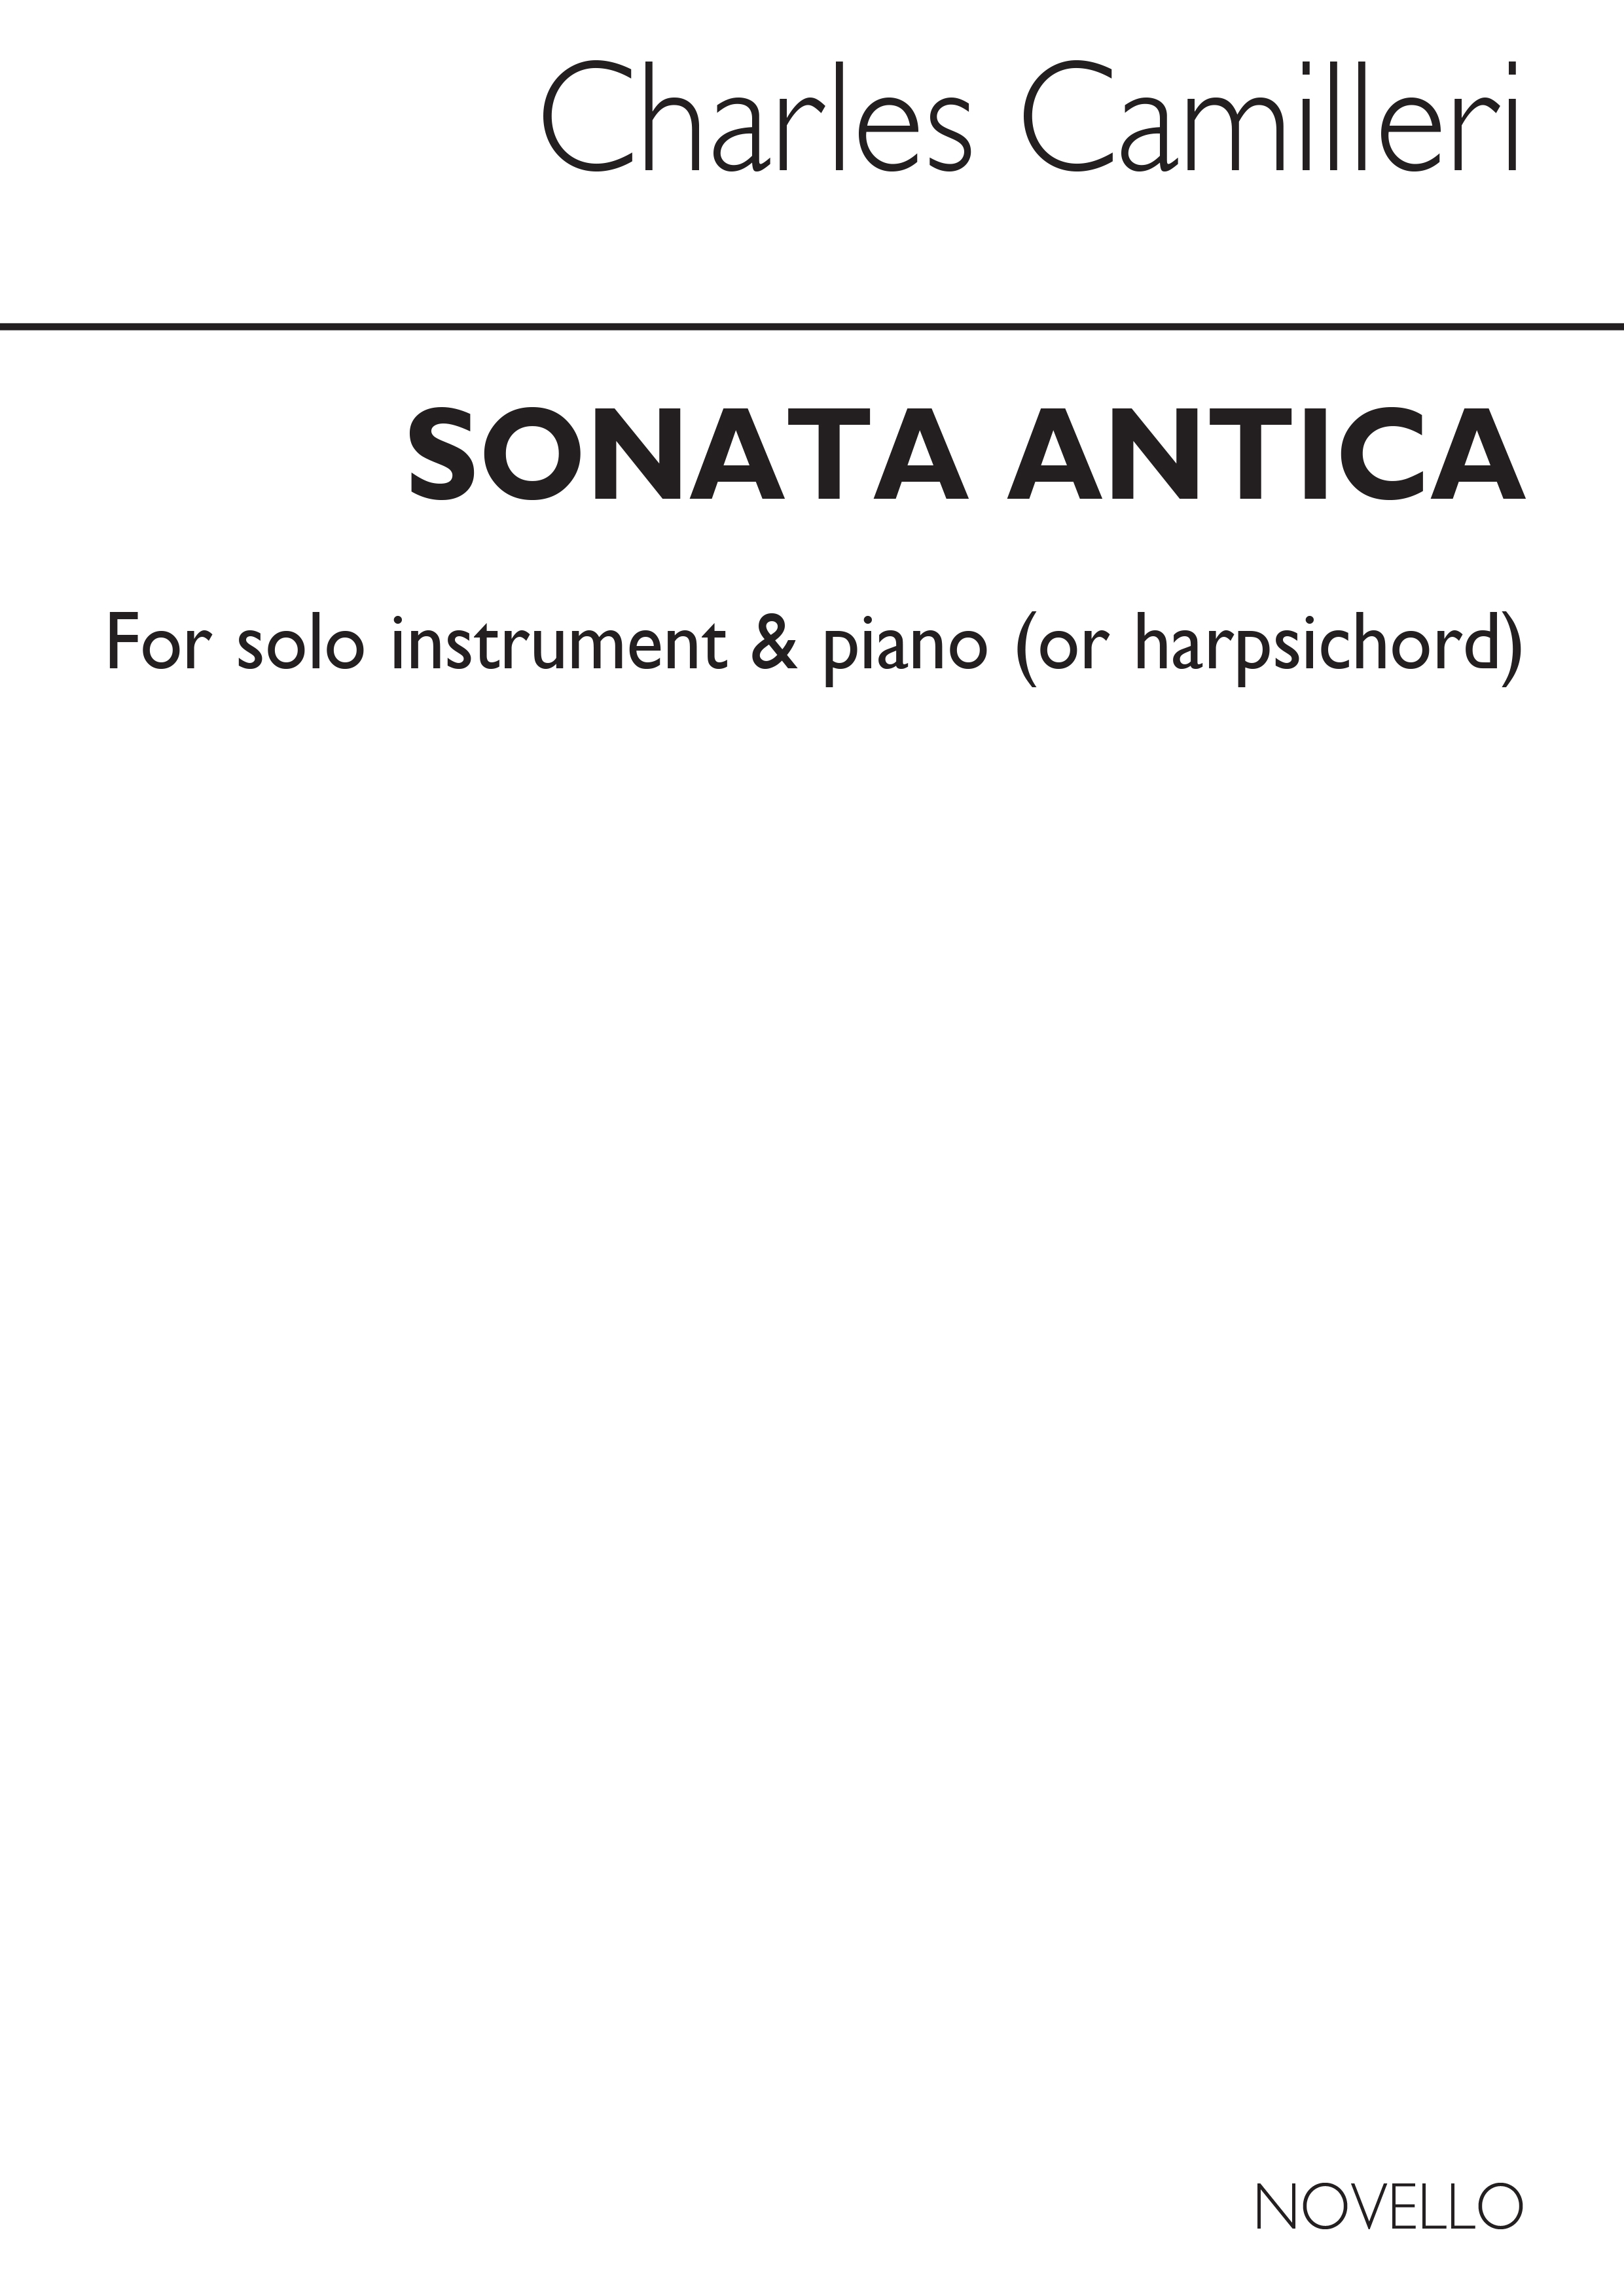 Camilleri: Sonata Antica